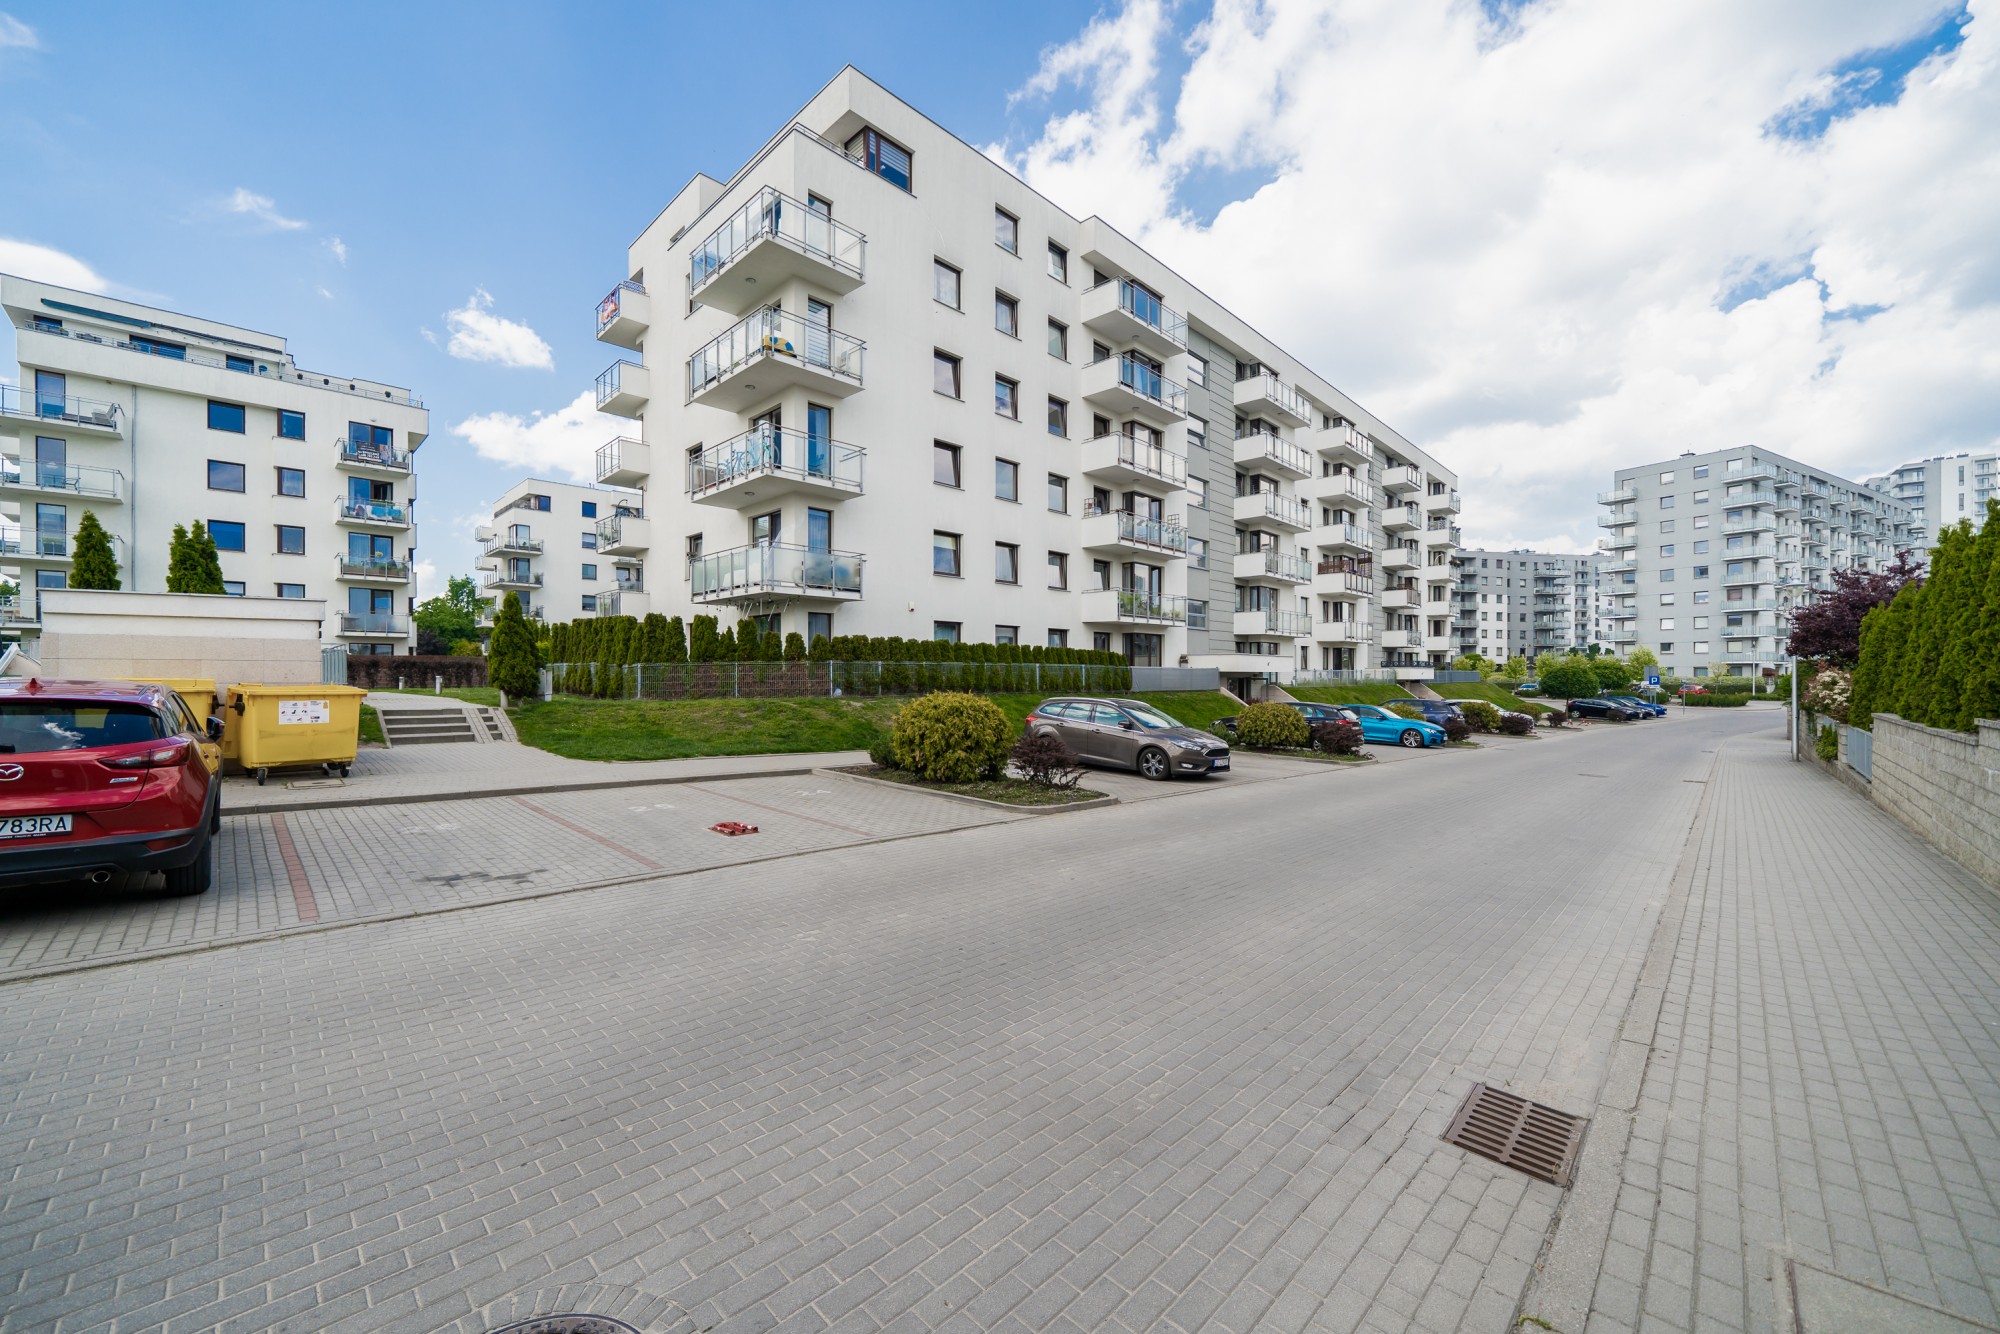 mieszkanie gdańsk słoneczna morena sprzedaż estatic biuro nieruchomości gdynia sopot pośrednik nieruchomości